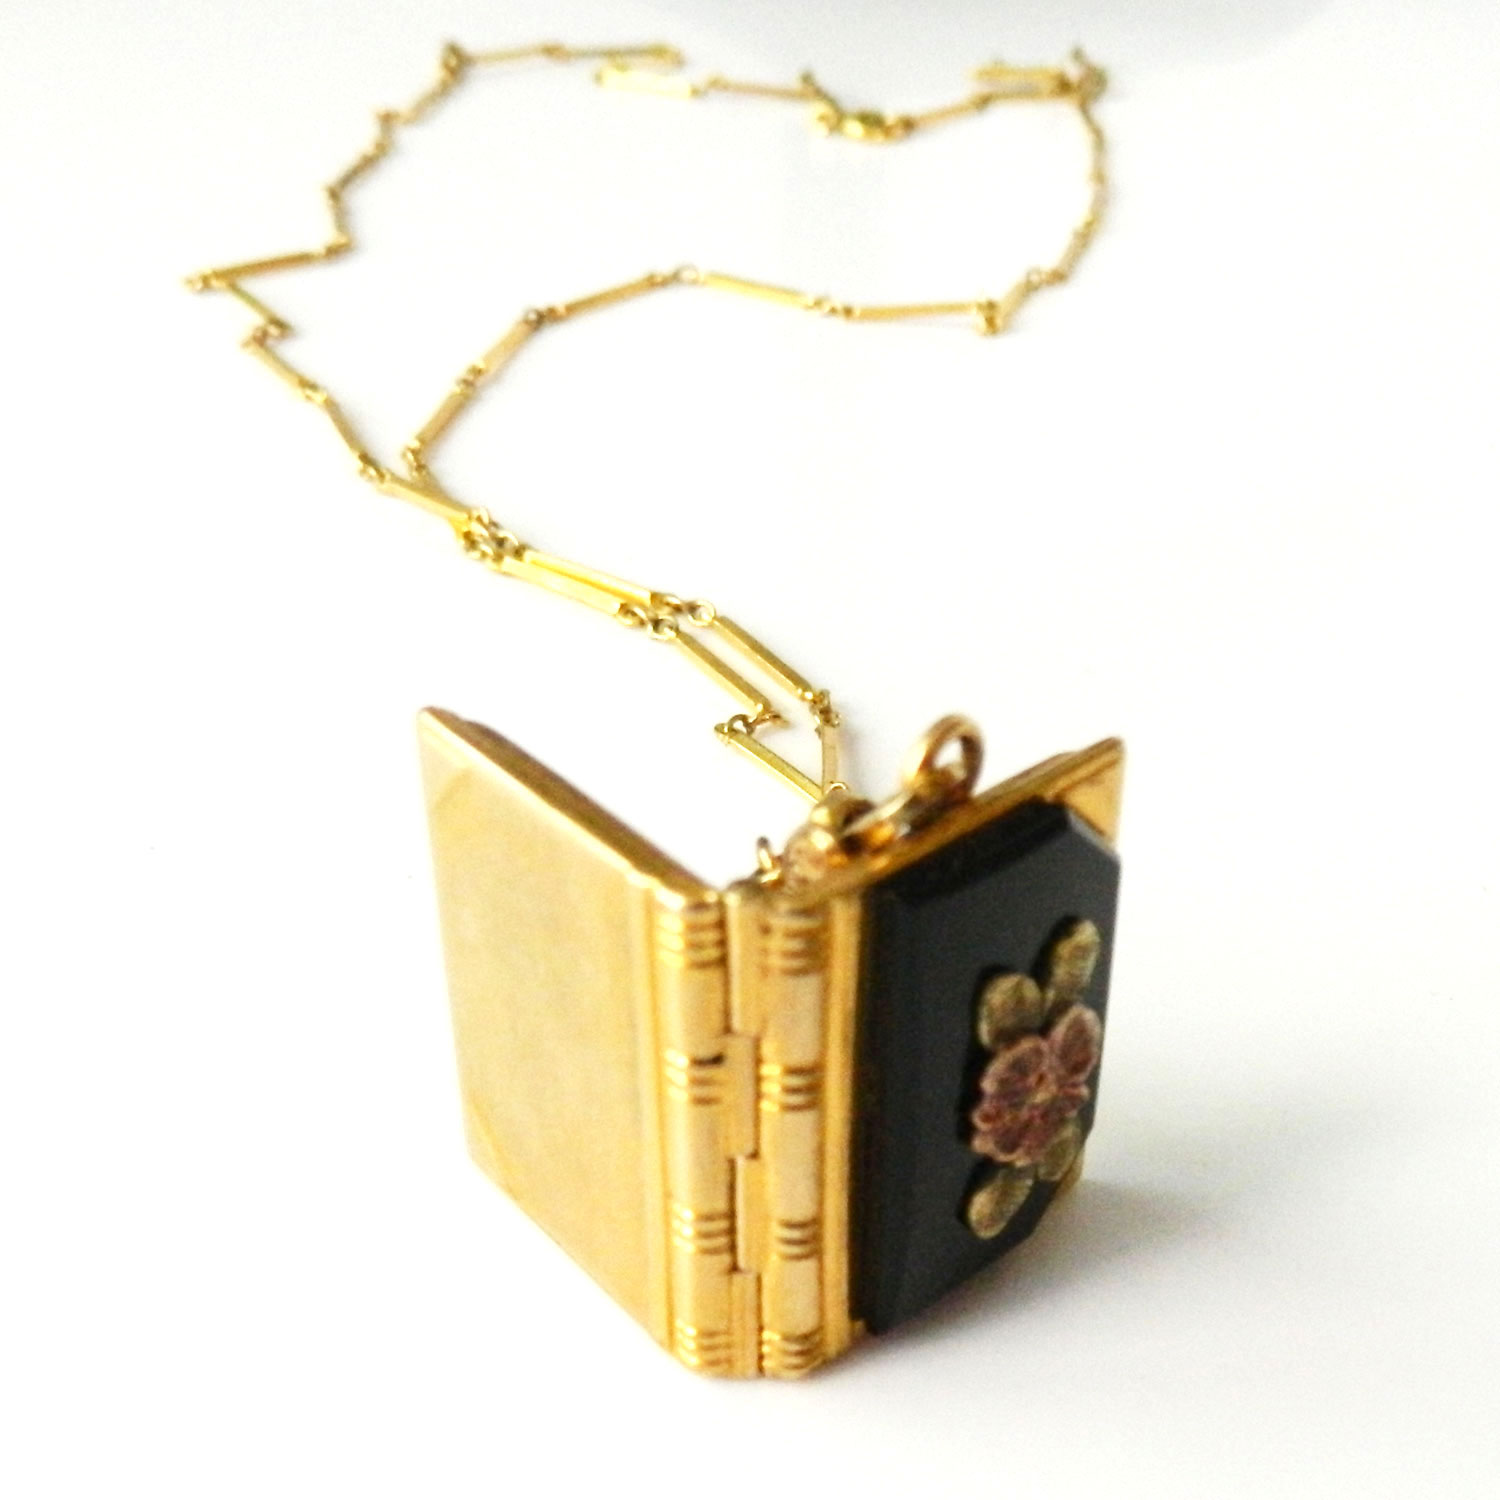 Antique book locket necklace